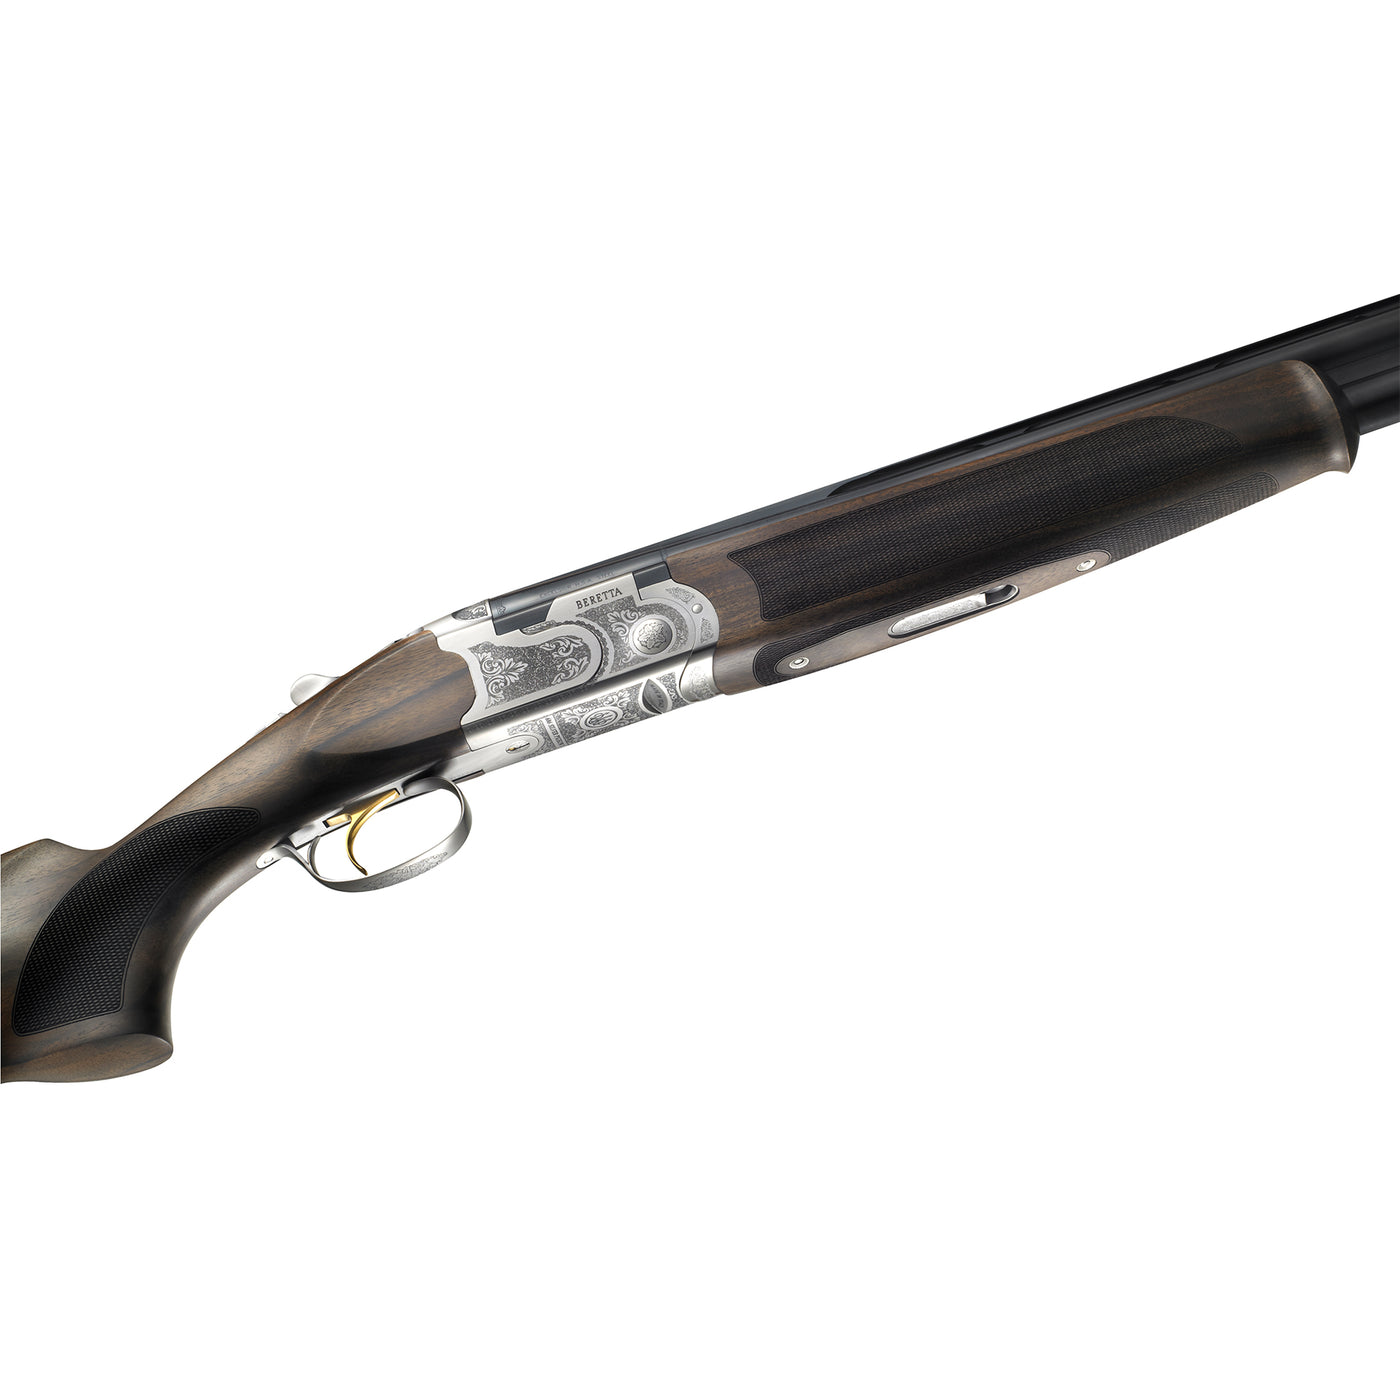 Beretta 686 silver pigeon i sporting shotgun receiver